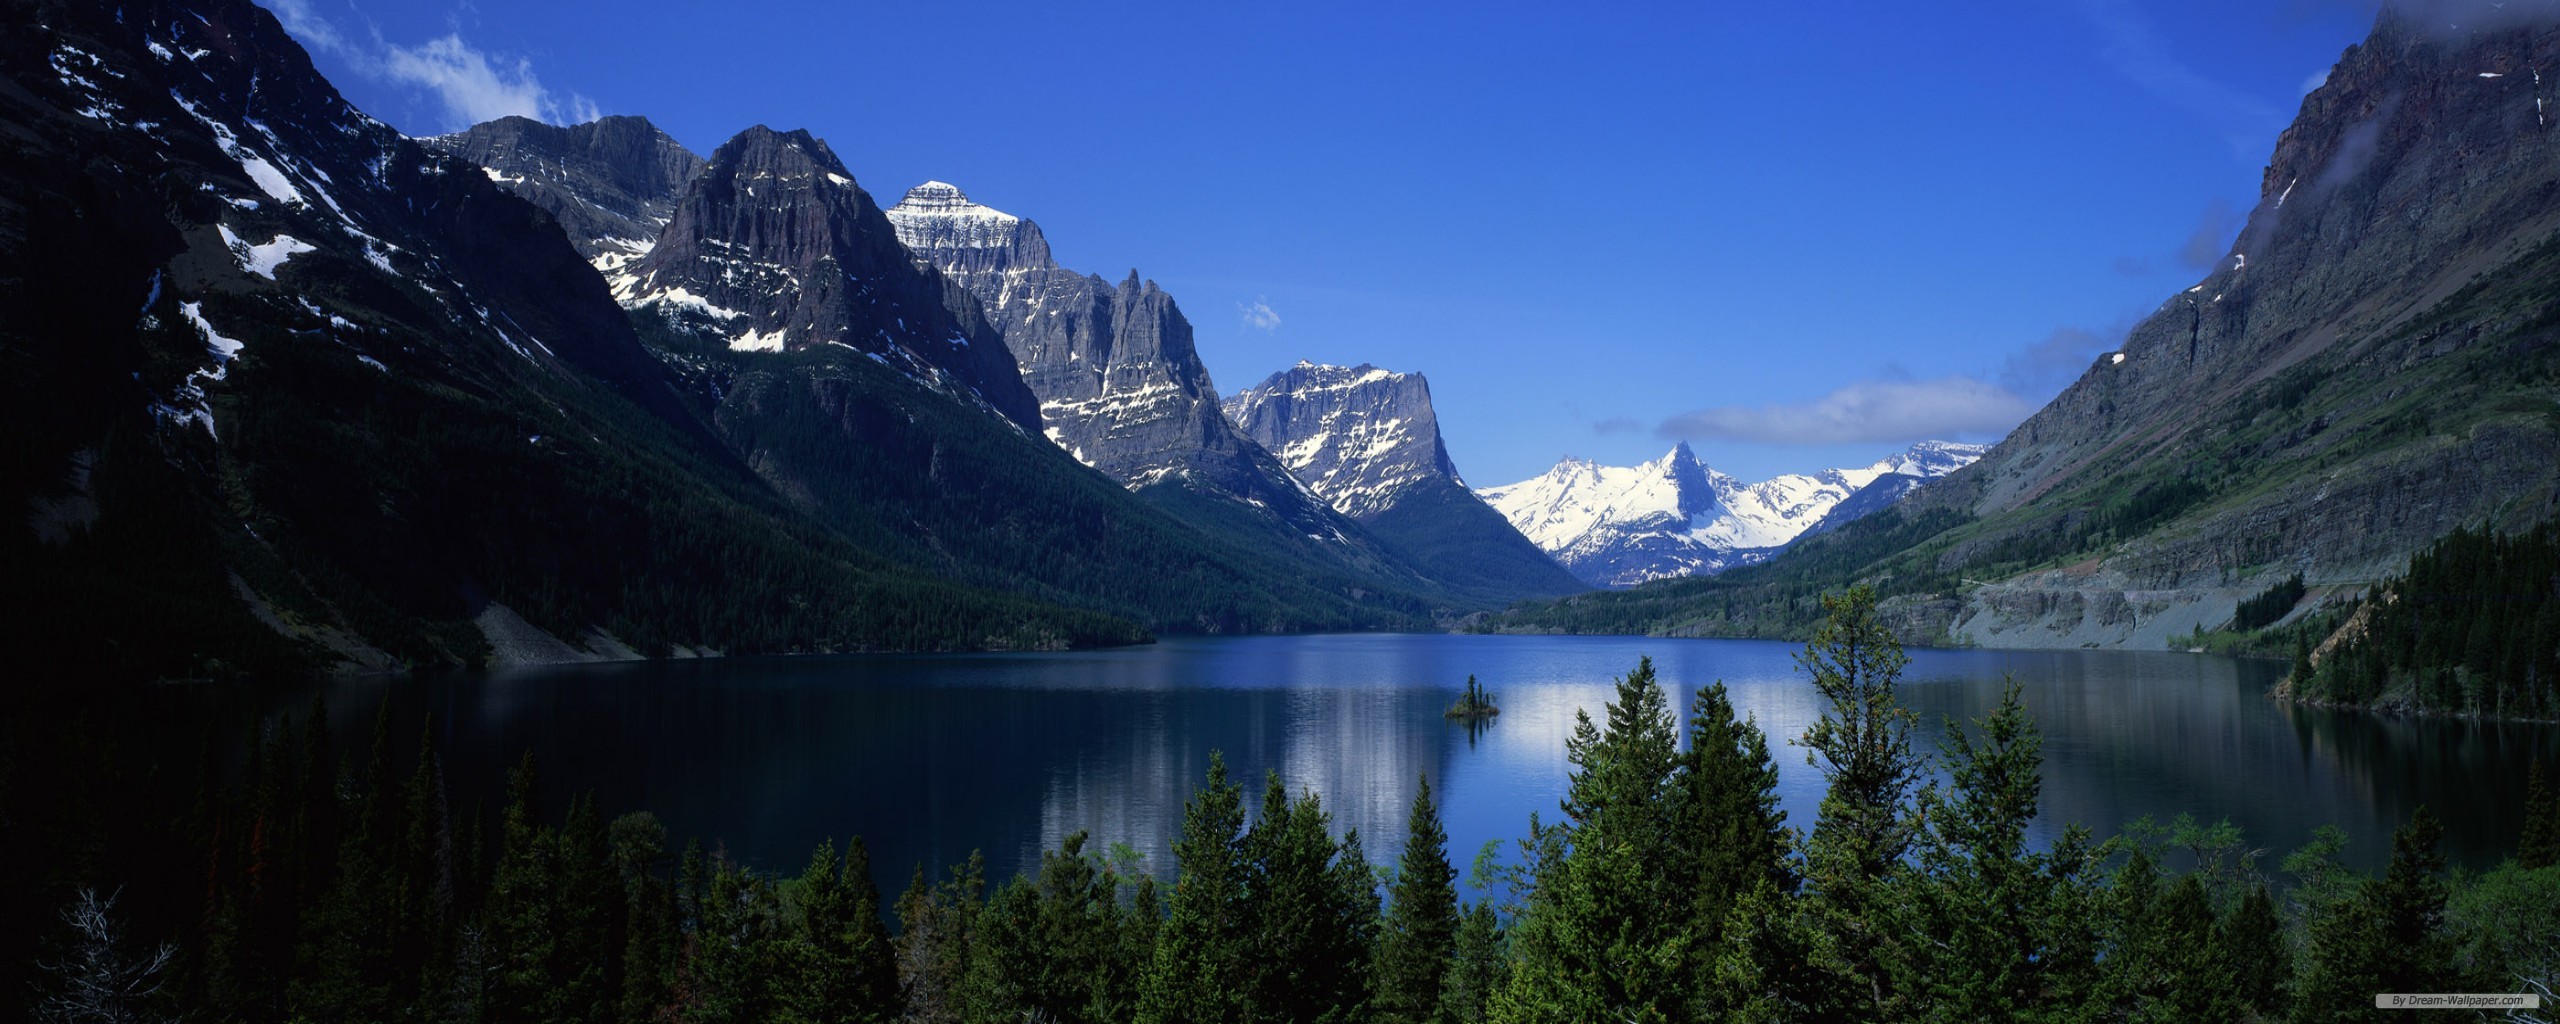 papel tapiz de doble pantalla,montaña,paisaje natural,naturaleza,cordillera,lago glacial